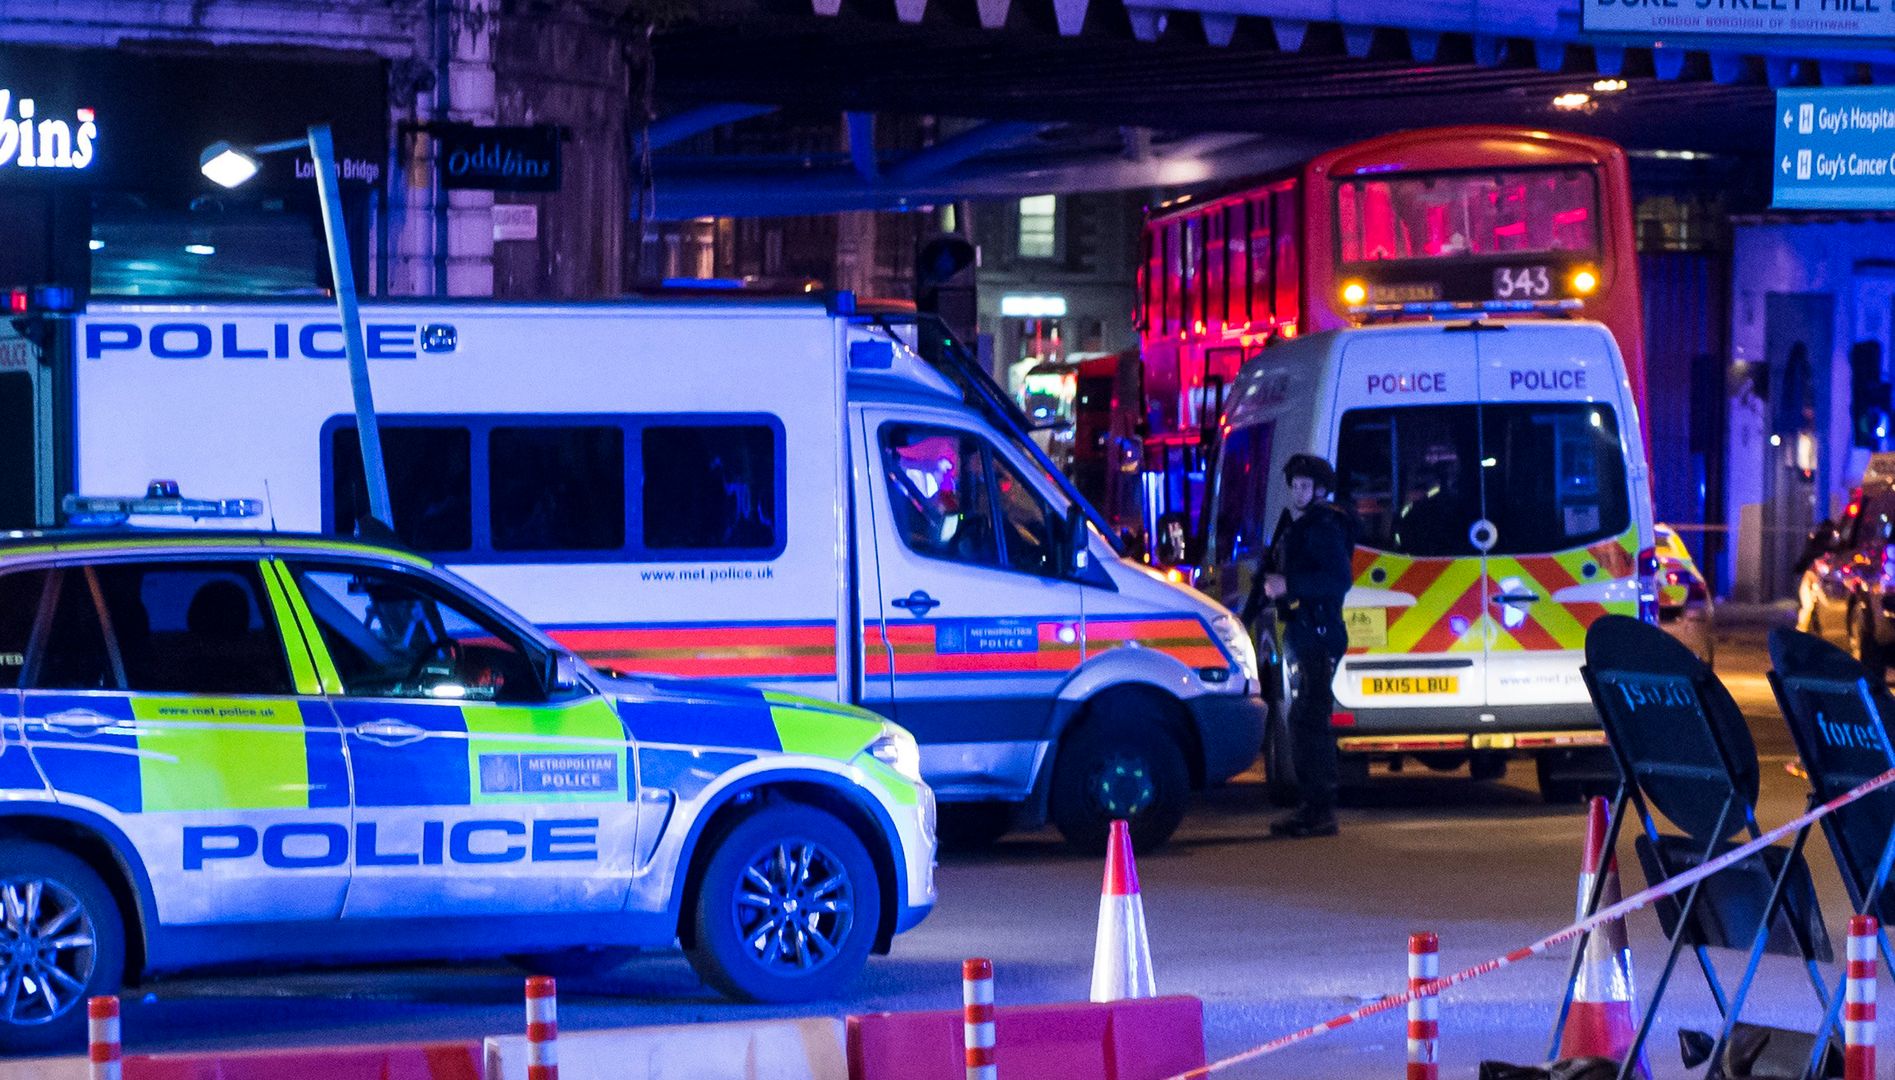 Zamach terrorystyczny w Londynie. Oto, co wiemy do tej pory